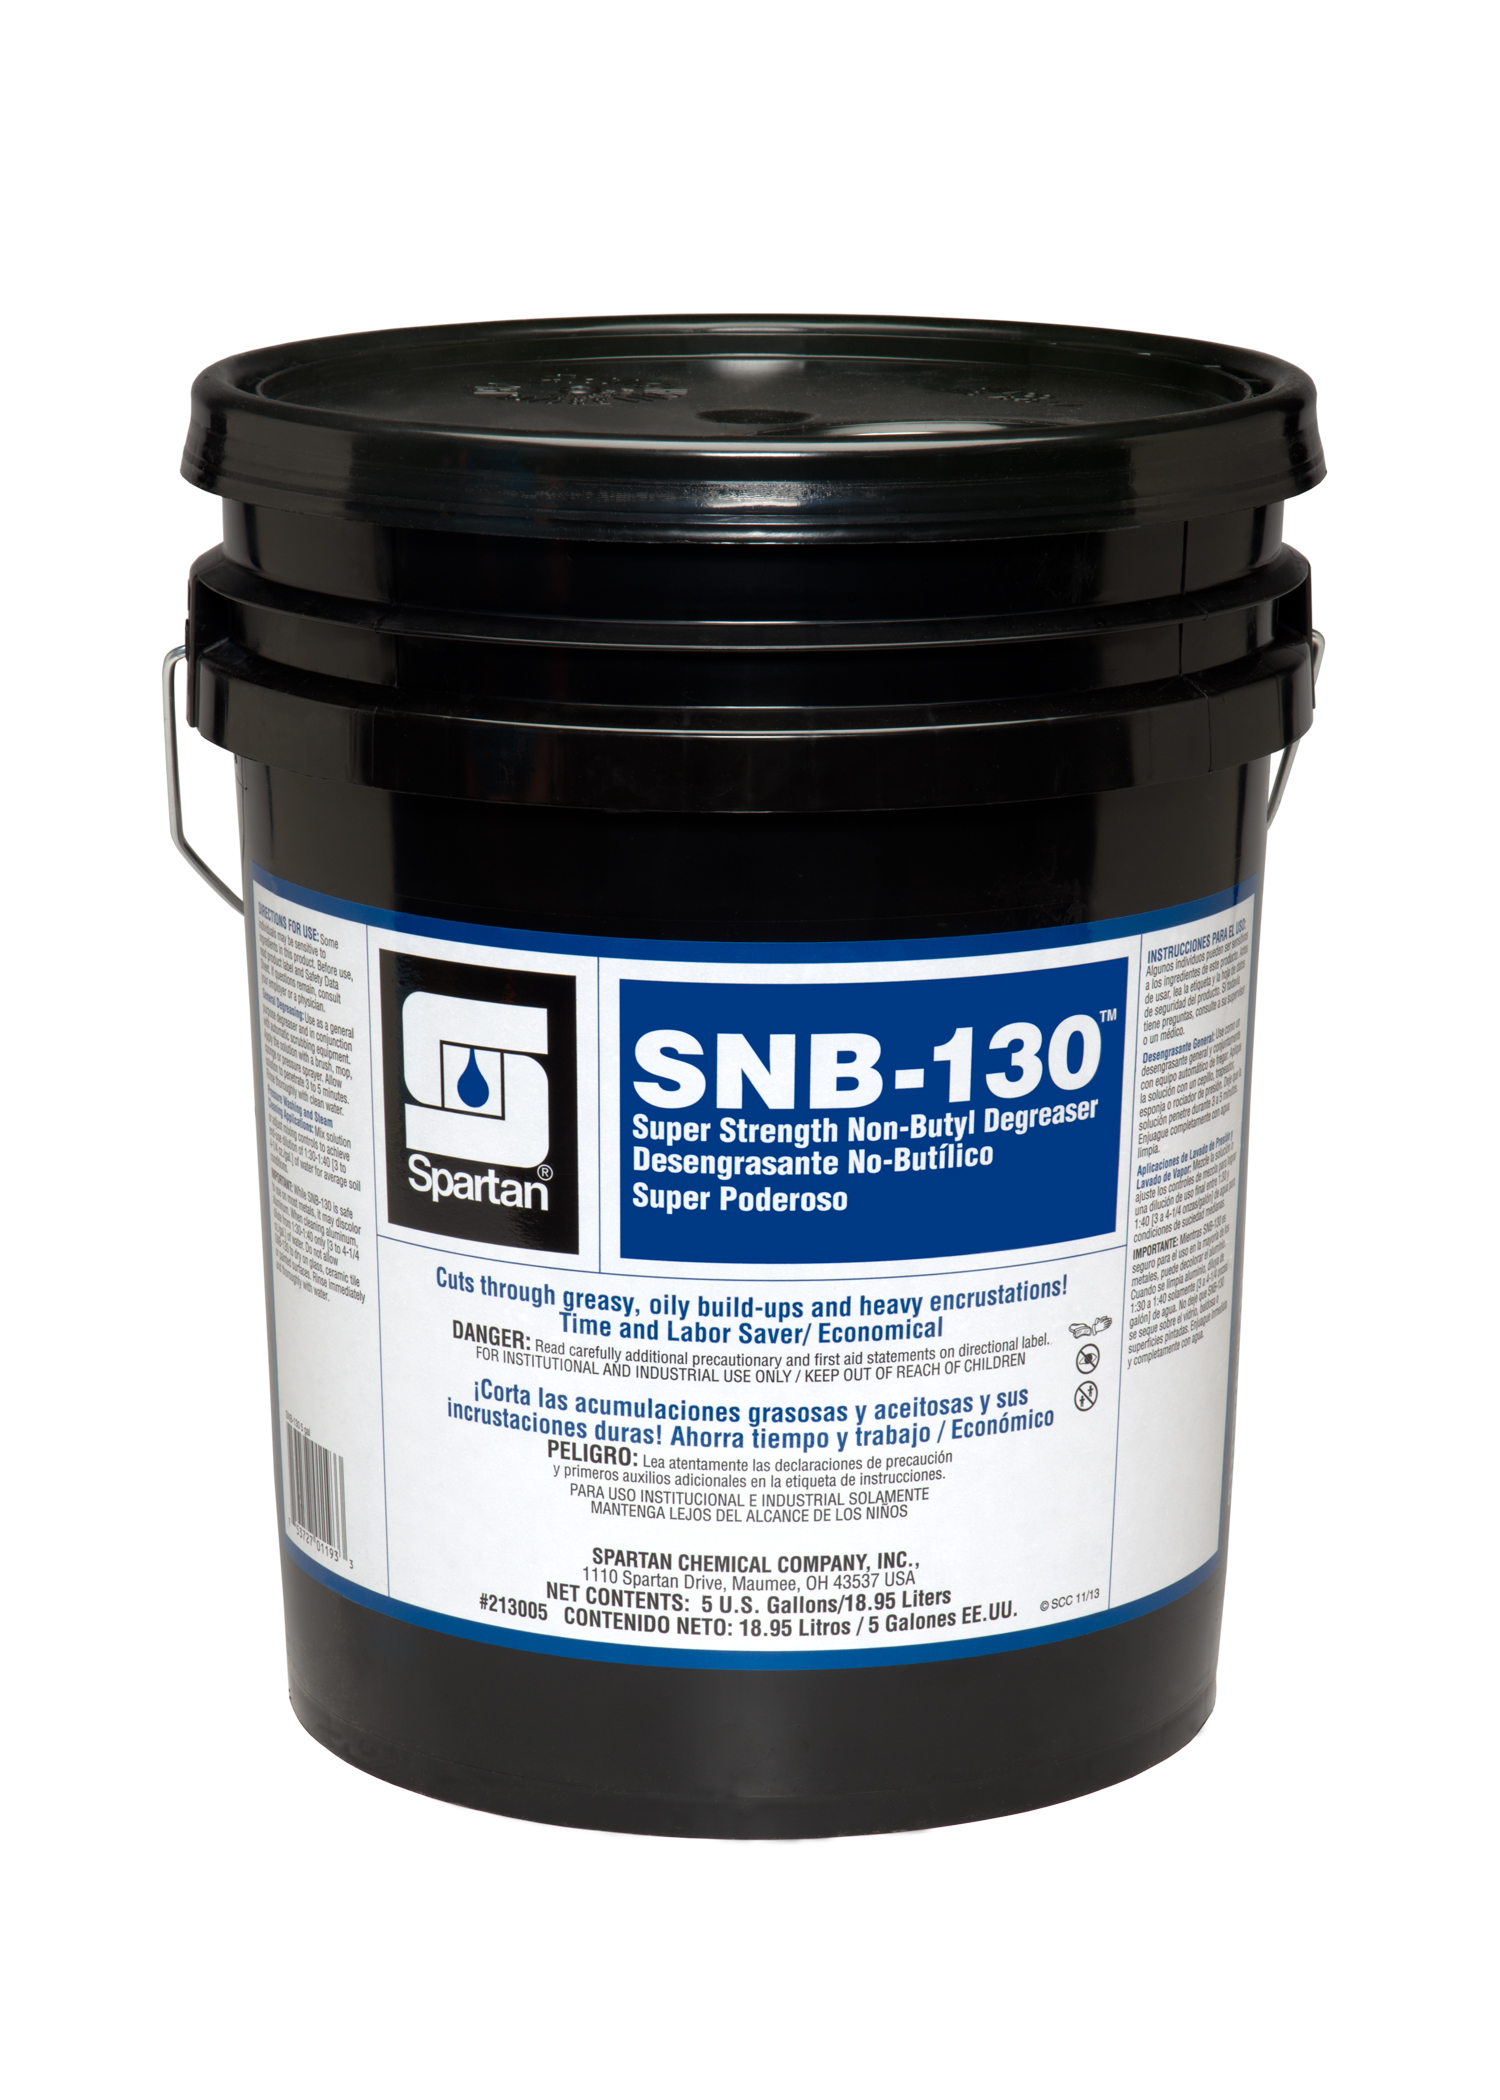 SNB-130® 5 gallon pail